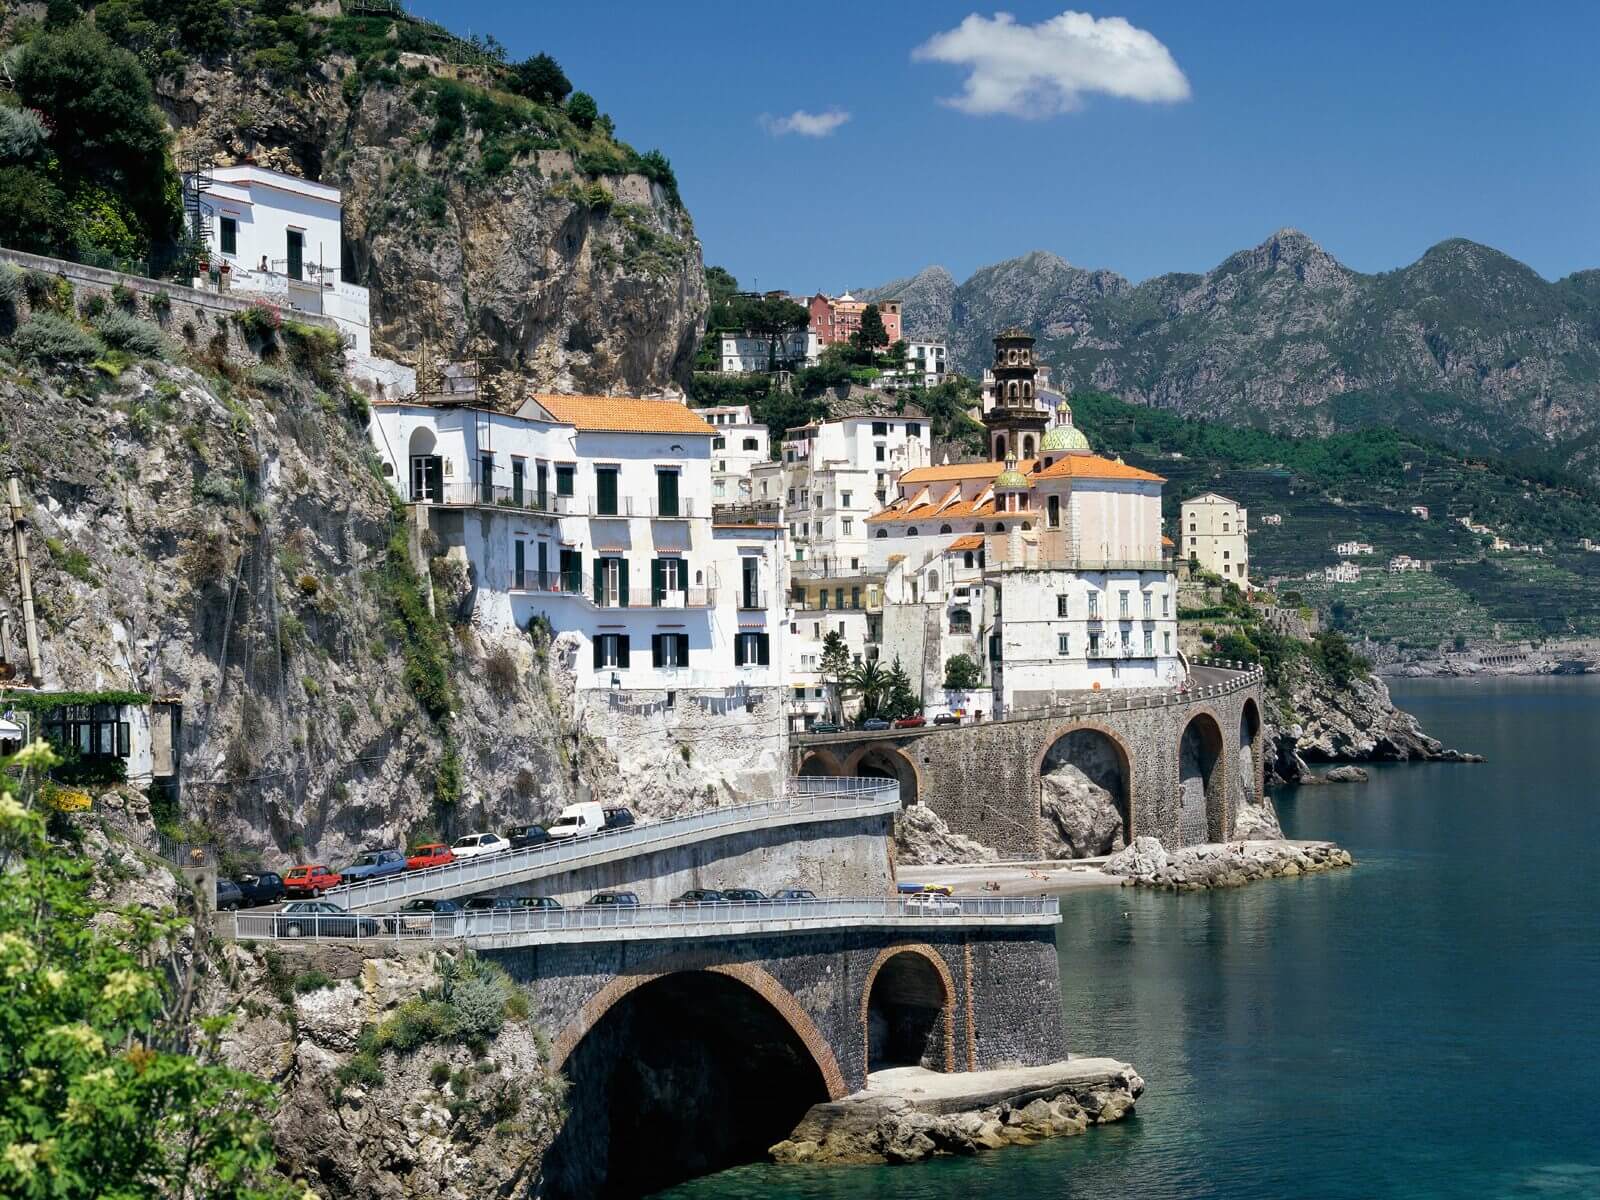 Découvrez la Côte amalfitaine, une côte rocheuse incroyablement belle et très populaire en Italie